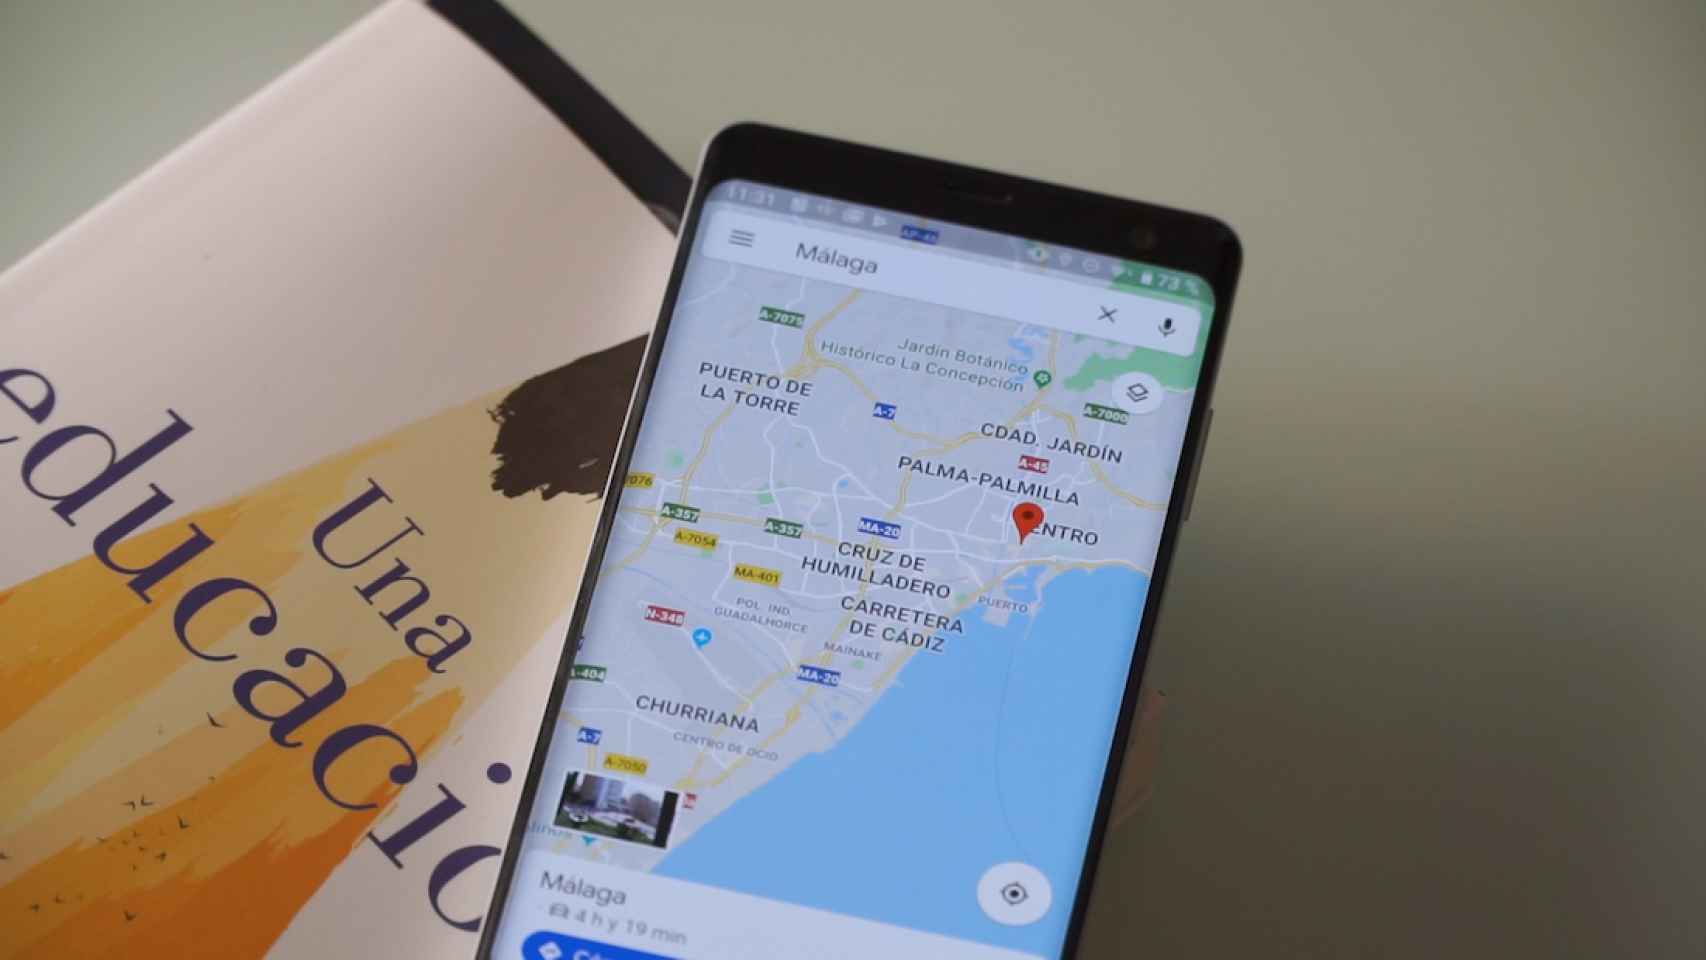 Los móviles Android pueden compartir la localización con Google si queremos